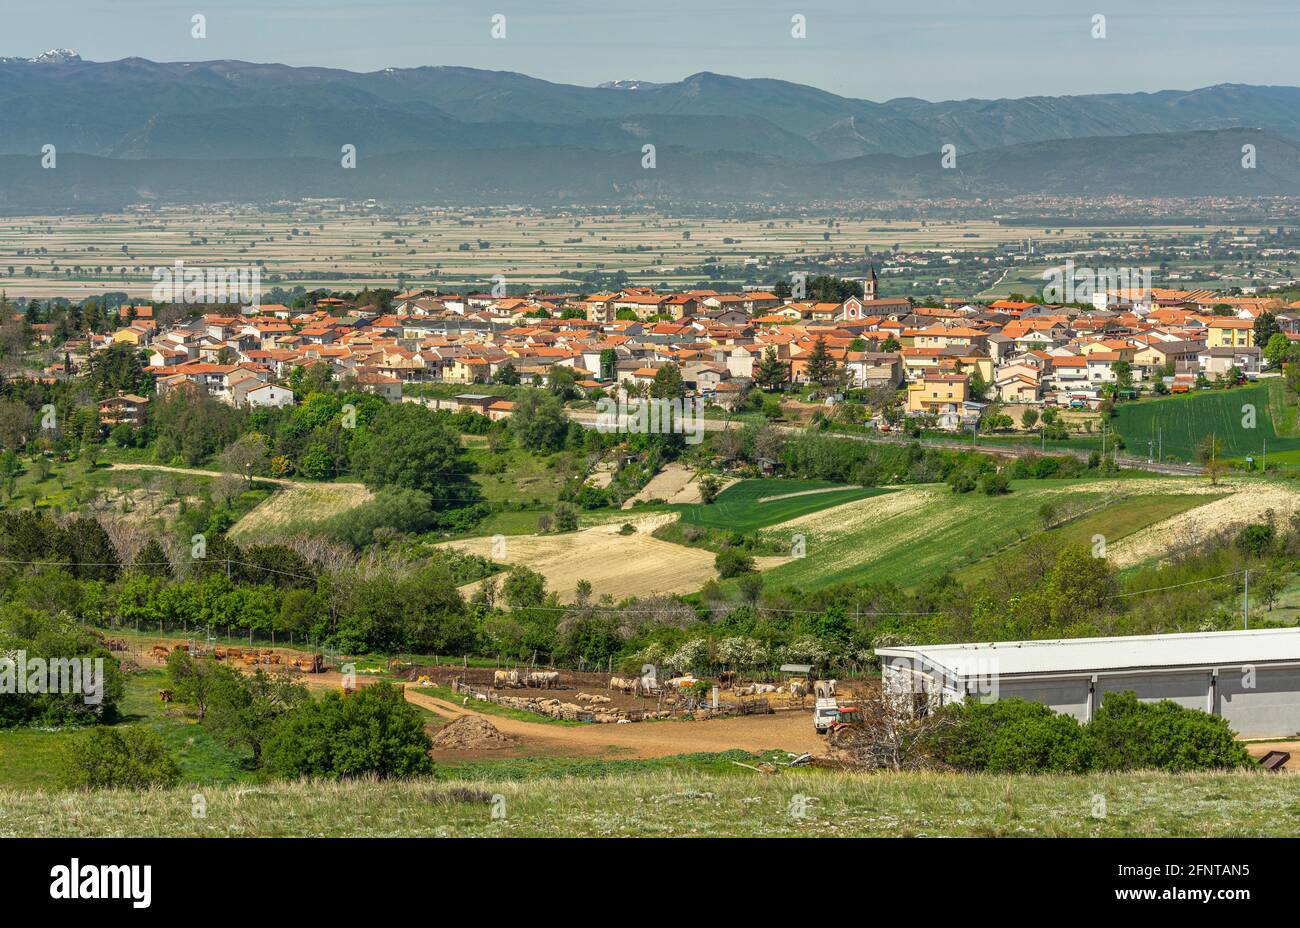 Vista dall'alto della nuova città di Collarmele, ricostruita dopo il  terremoto del 1915. Collarmele, provincia di l'Aquila, Abruzzo, Italia,  Europa Foto stock - Alamy